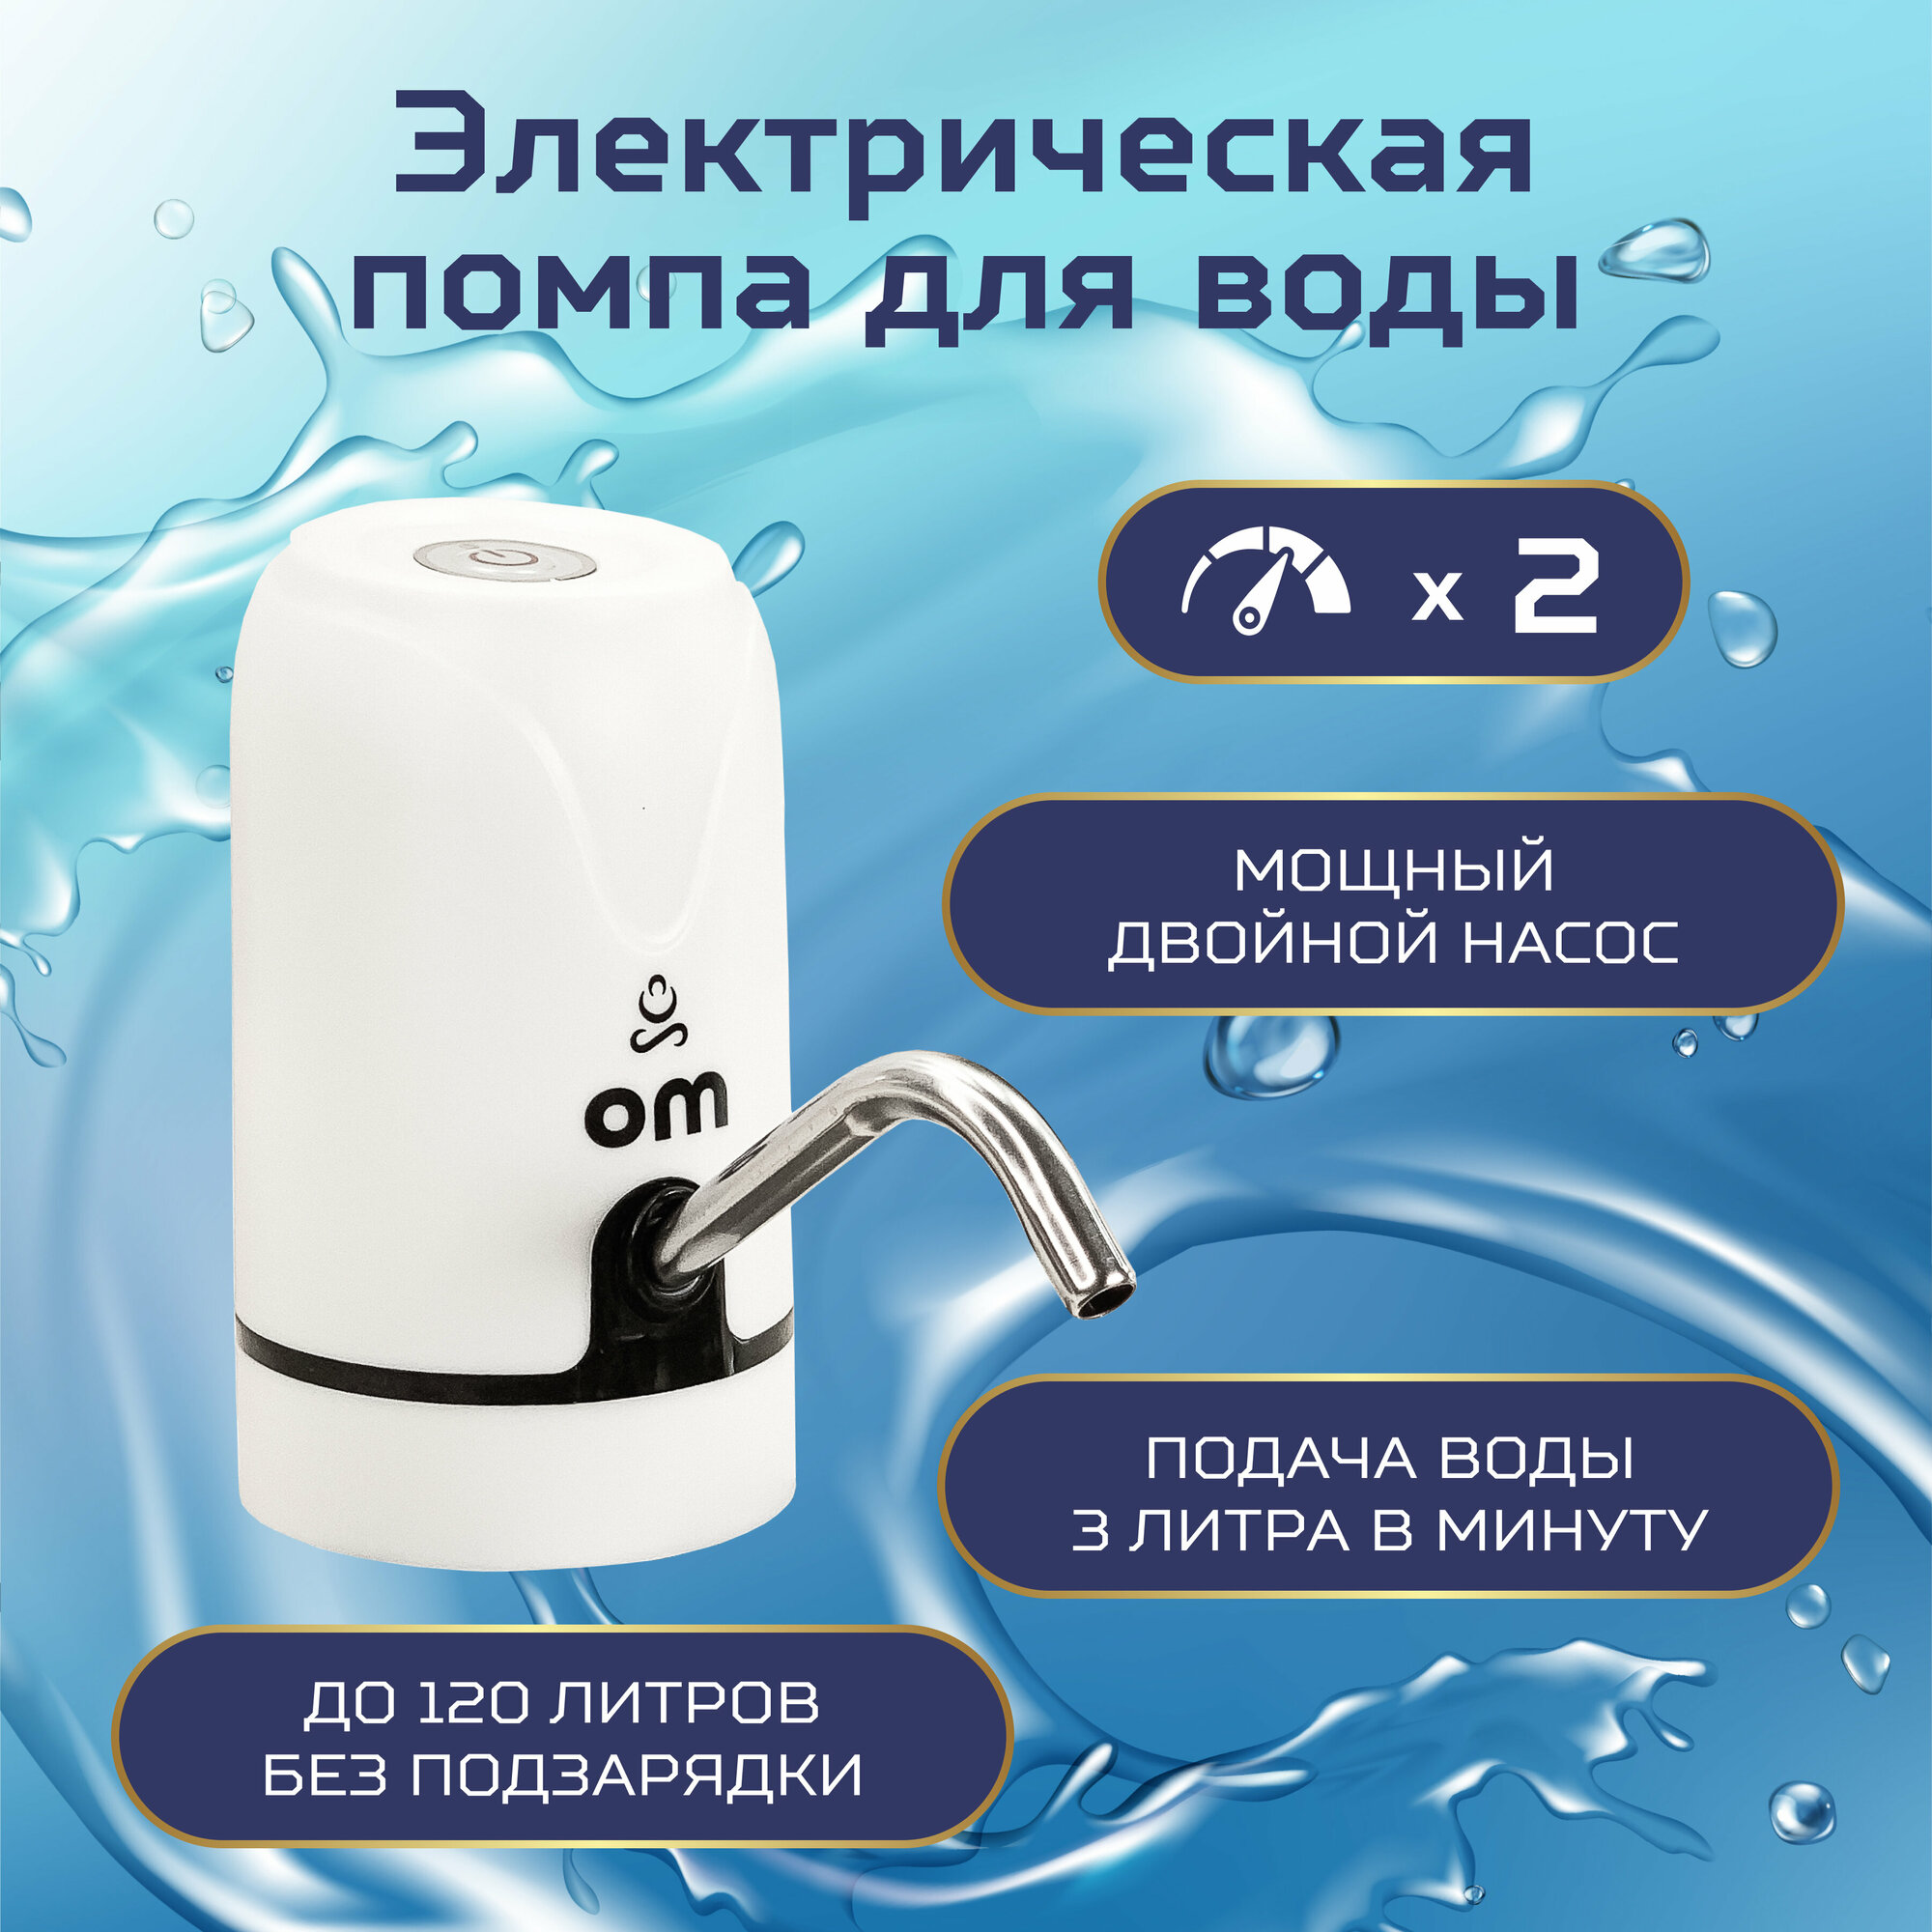 Электрическая помпа для воды OM, белый цвет, без охлаждения, установка на бутылку W062S